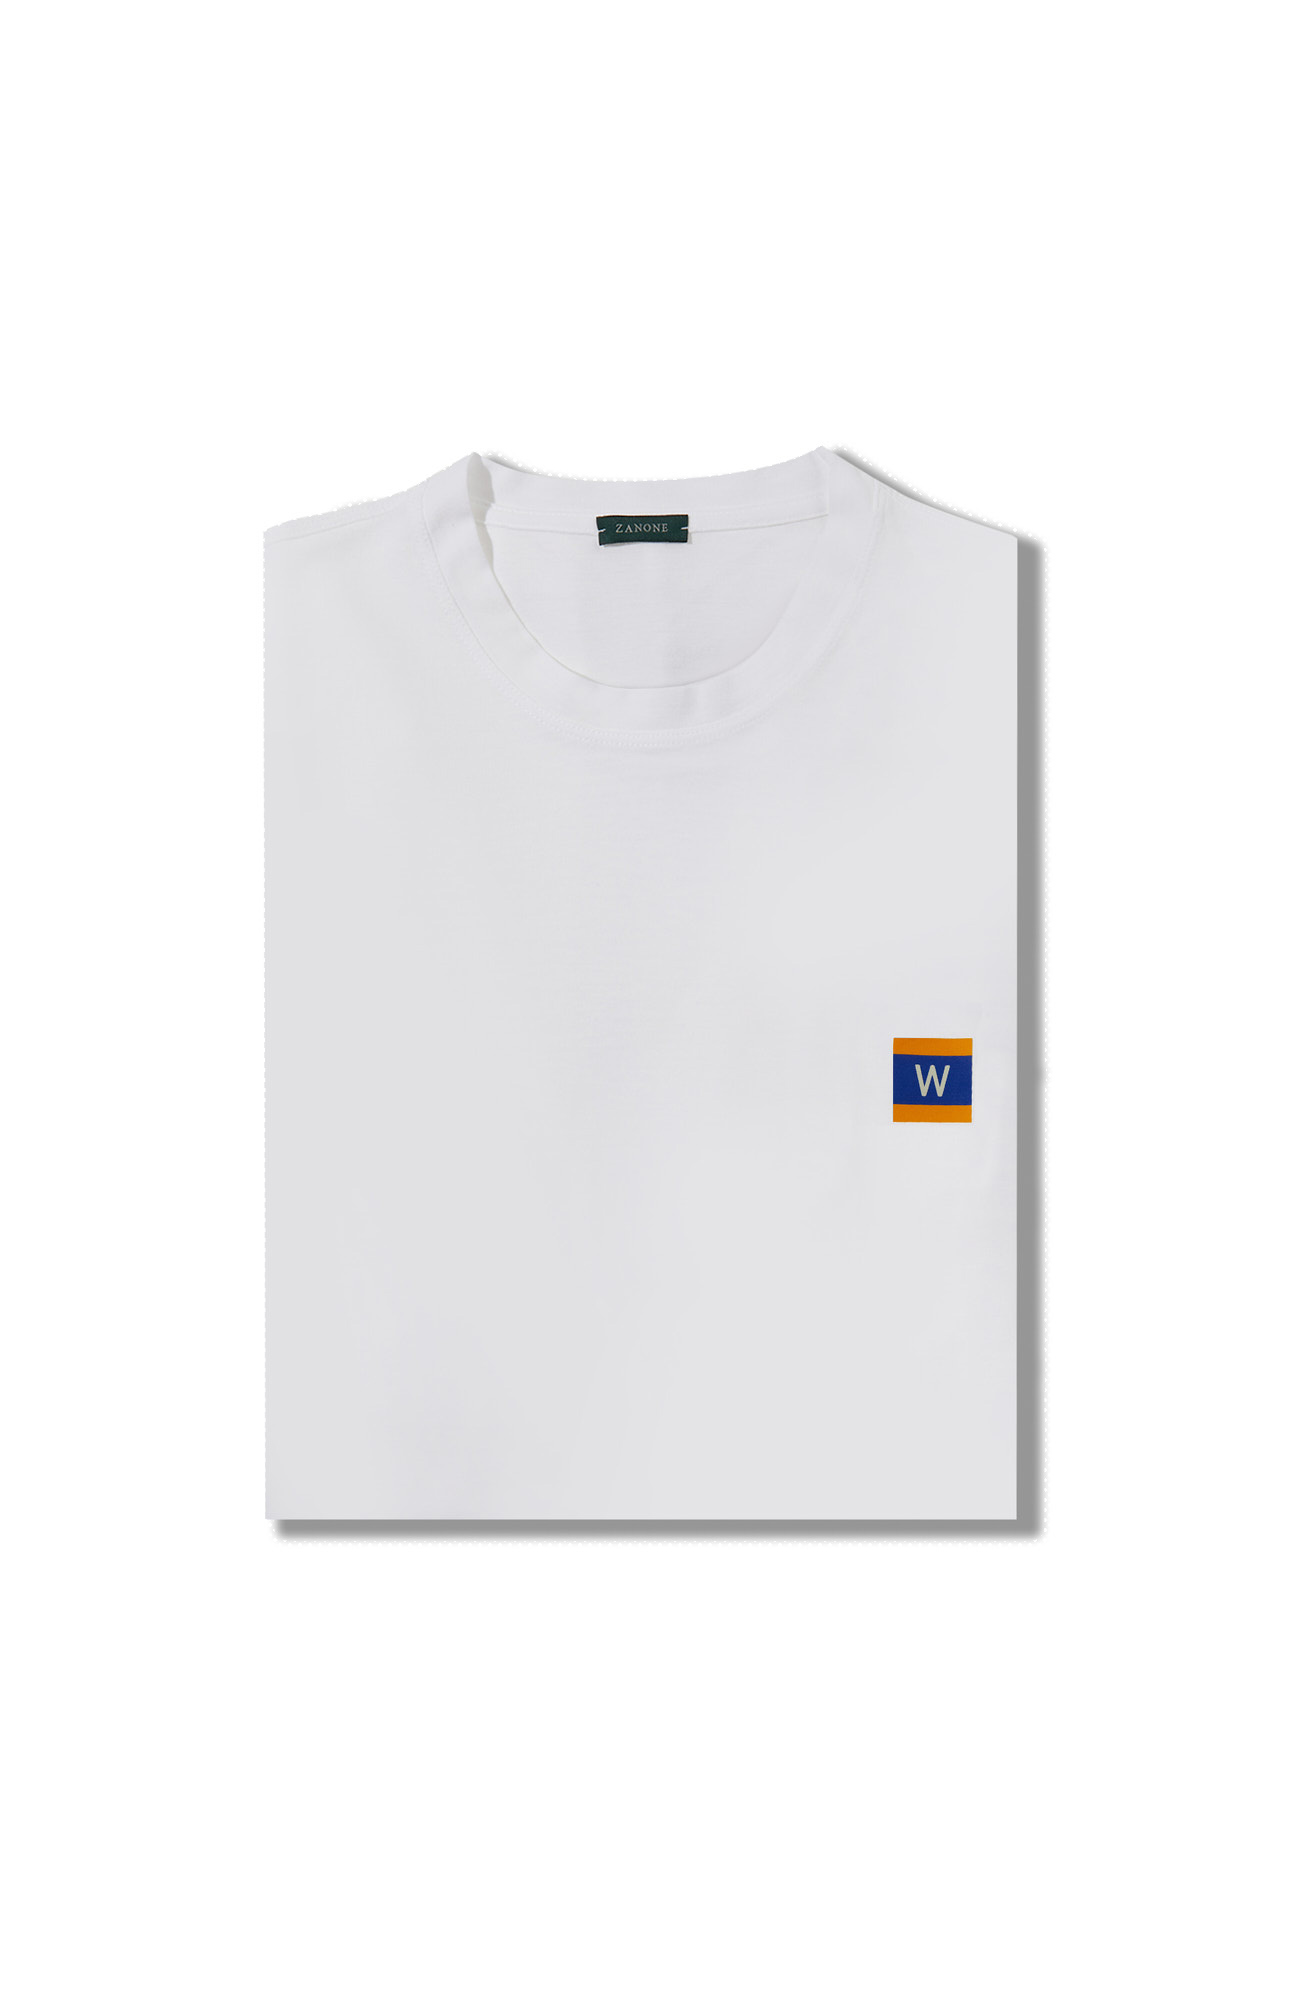 アイスコットン半袖スリムフィットTシャツ、フラッグシリーズのワッペン付き | ZANONE Icecotton | Slowear